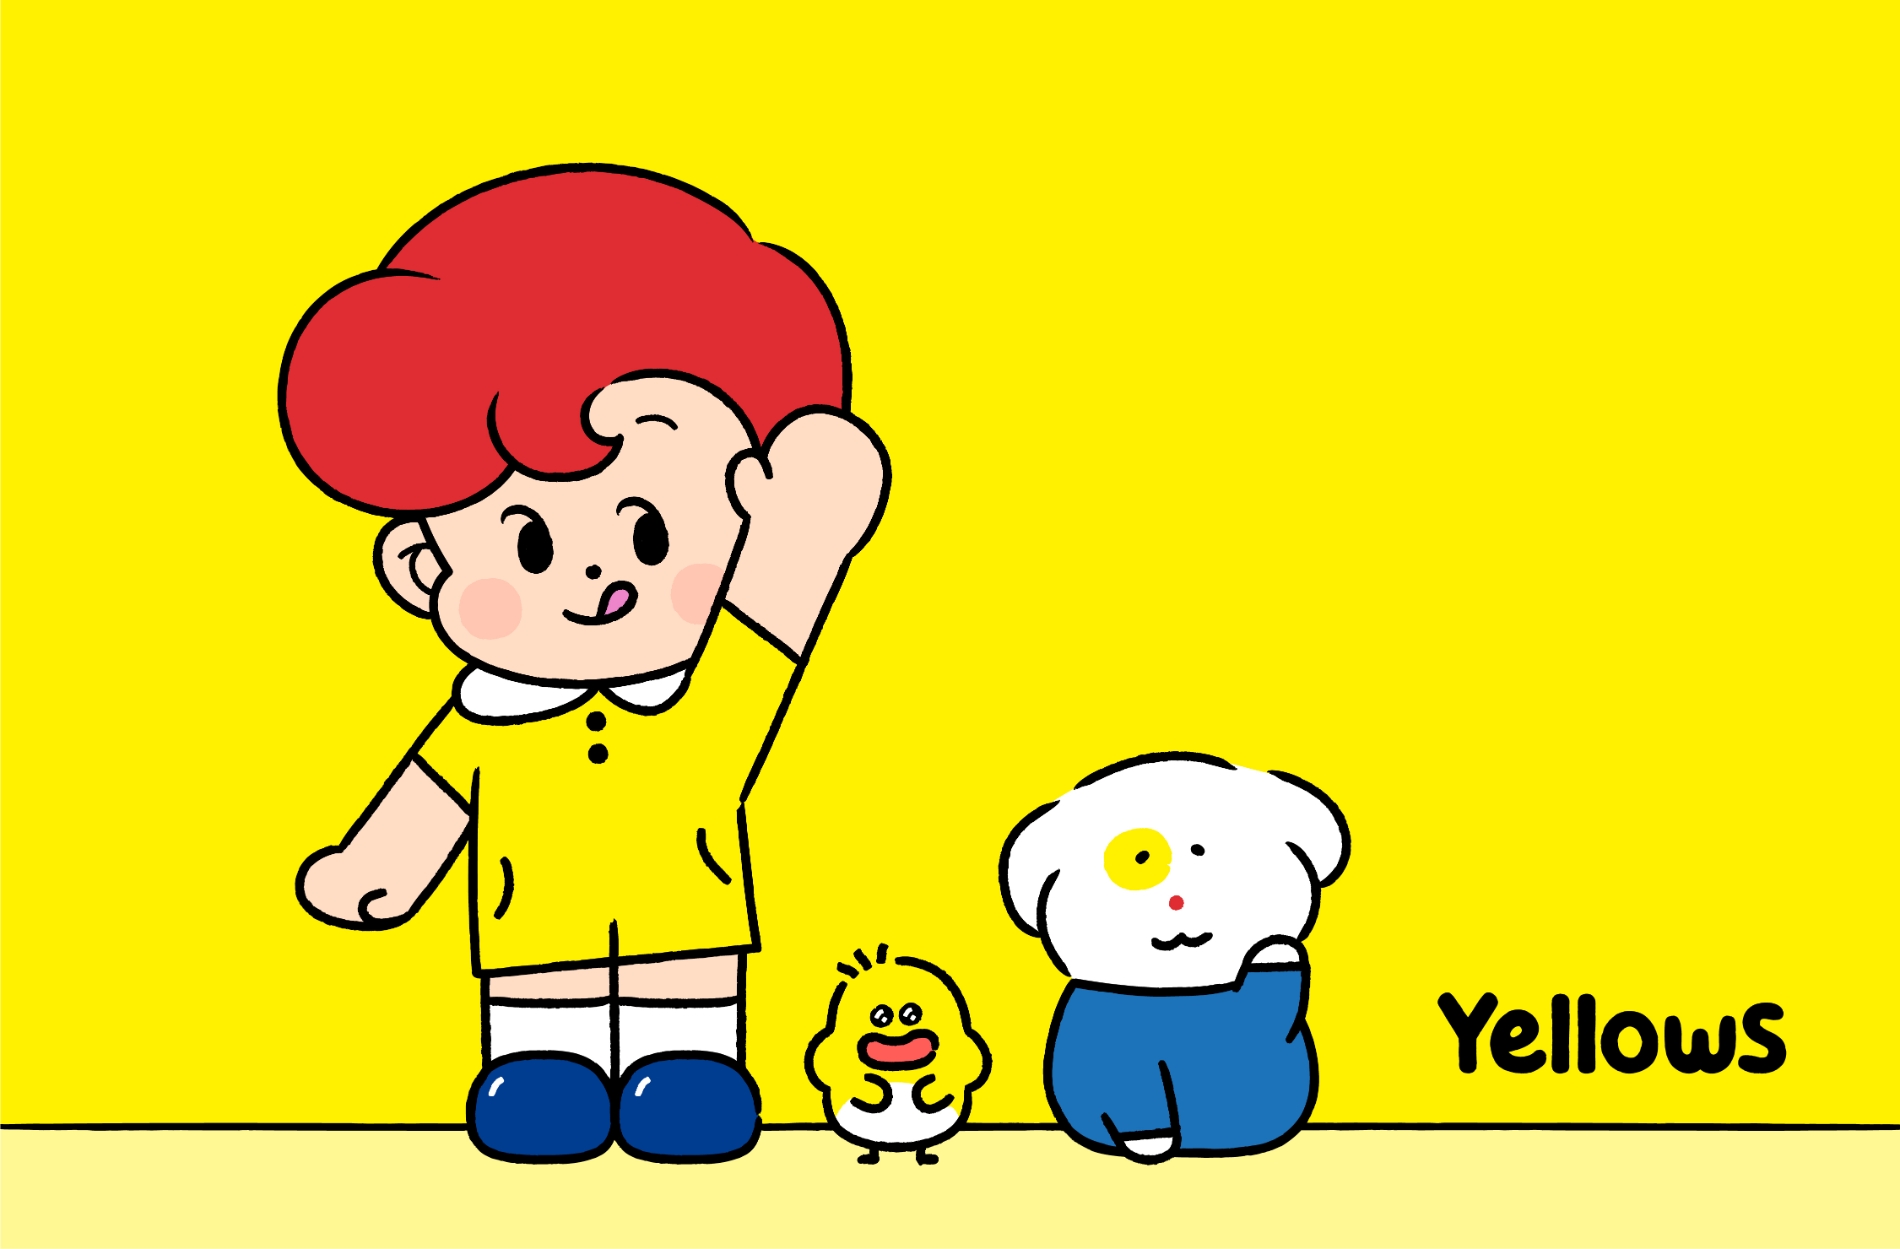 ㈜오뚜기 공식 캐릭터 ‘옐로우즈(Yellows)’./ 사진제공 = ㈜오뚜기